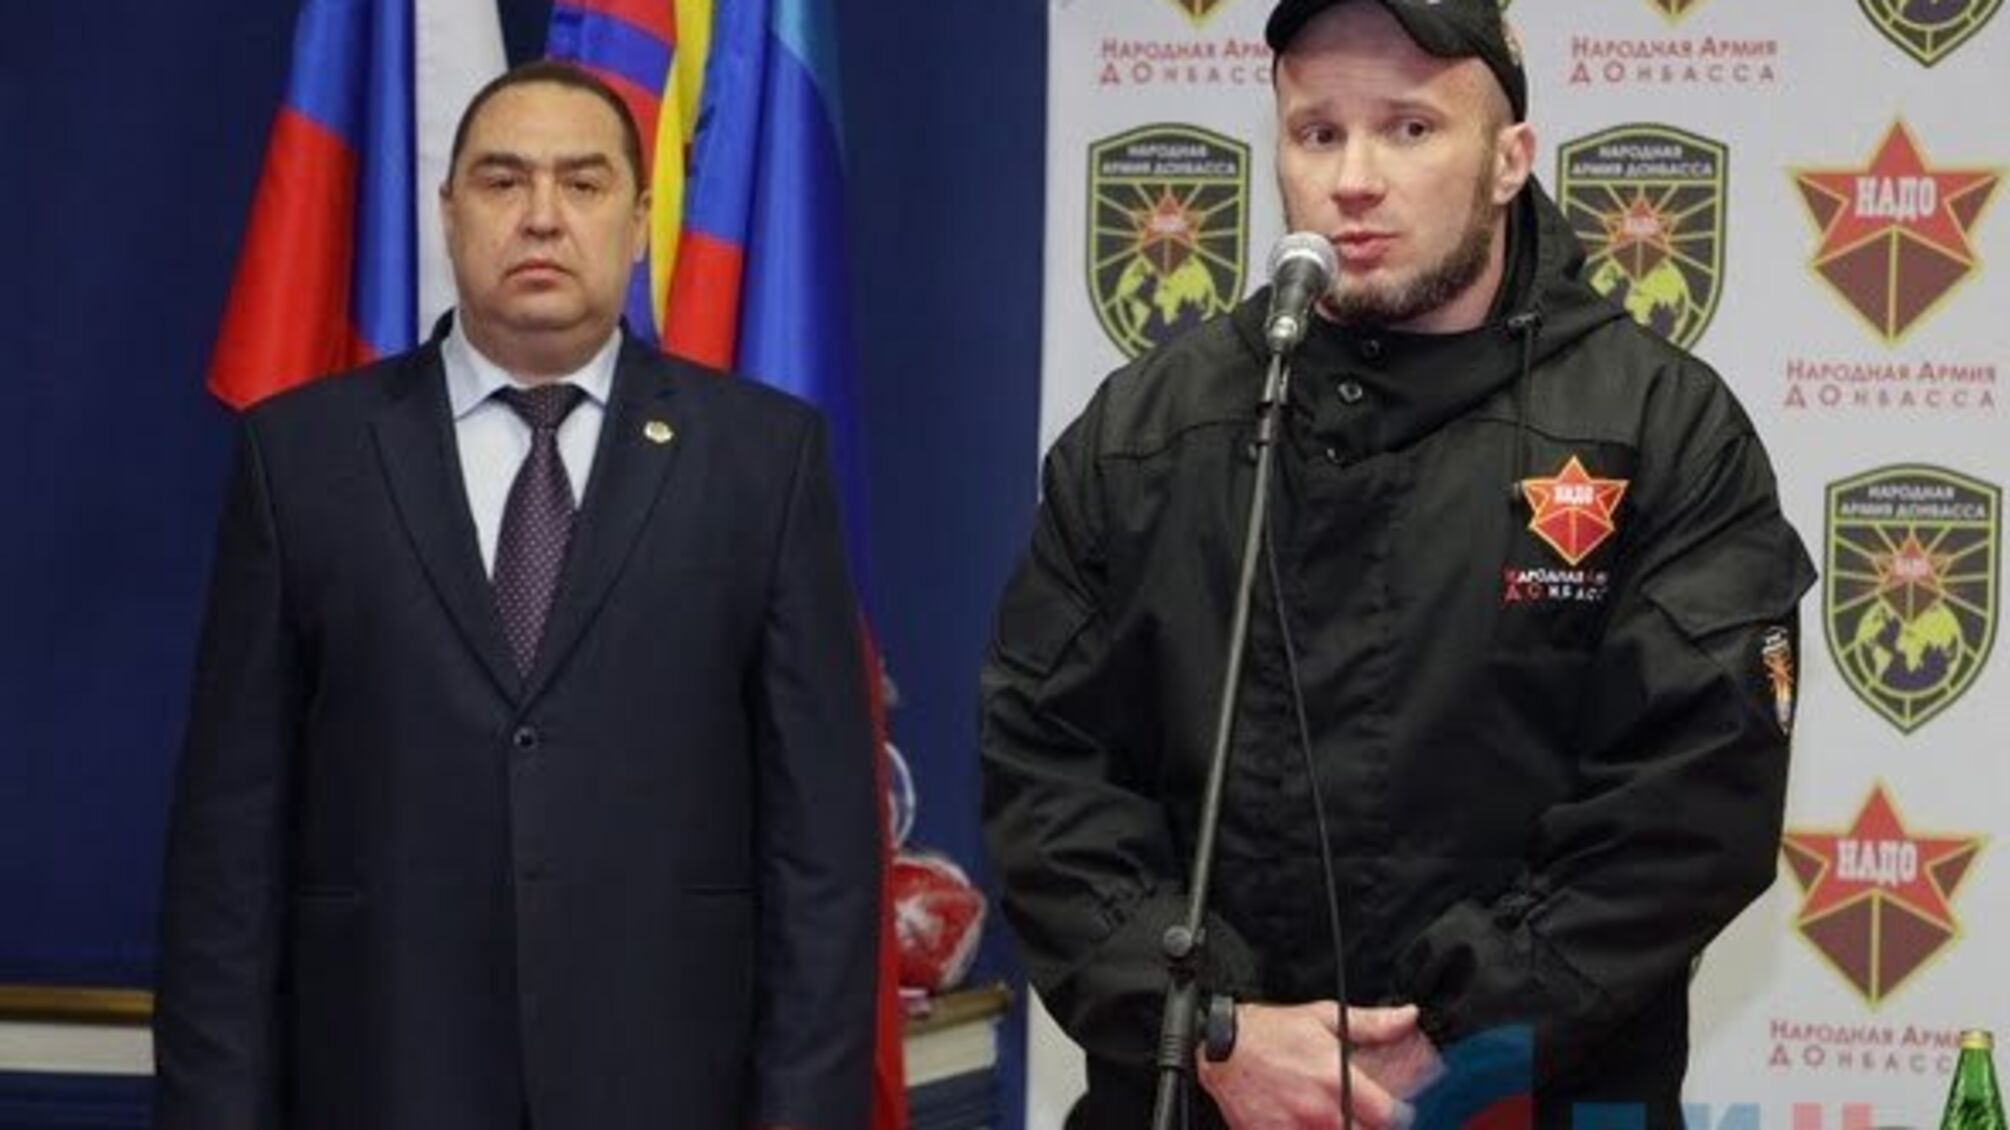 Вбивця буде тренувати спортсменів в Луганську: Плотницький покриває головоріза, який вбив трьох людей в Москві